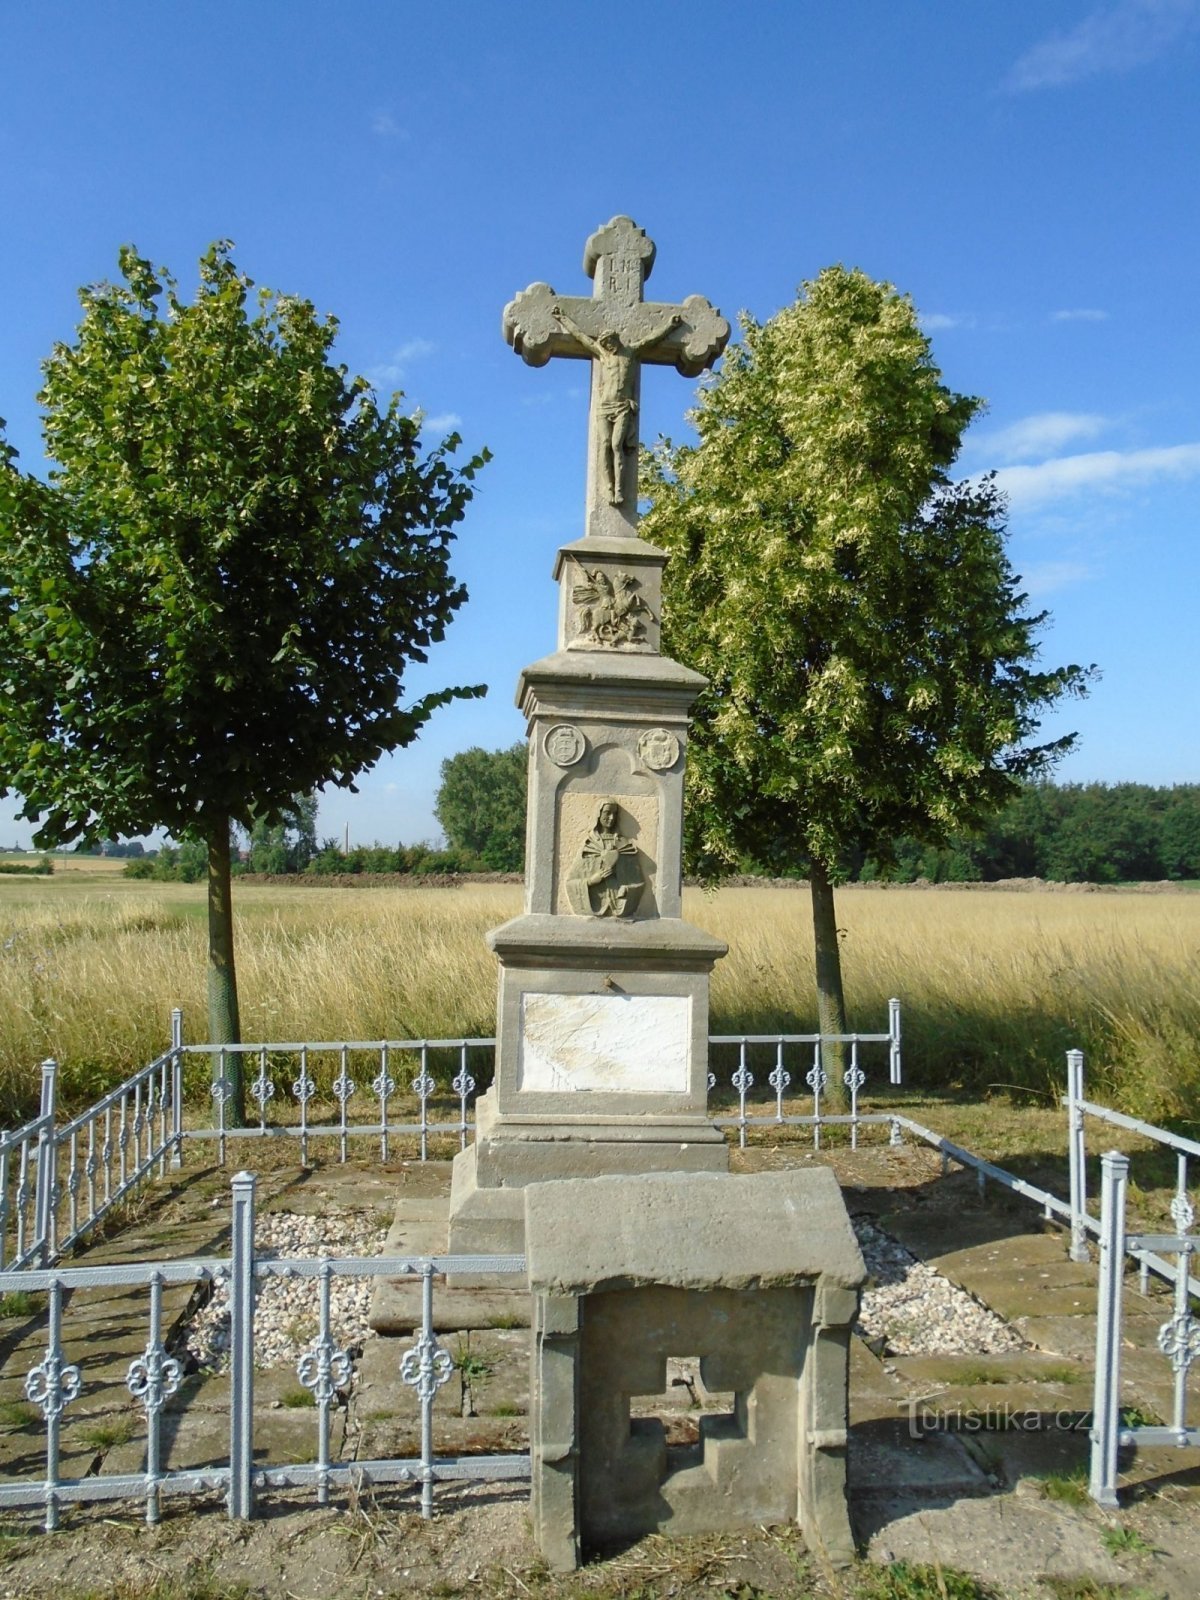 Đài tưởng niệm Bá tước Eduard của Thannhausen (Dolní Ředice, 26.6.2018/XNUMX/XNUMX)